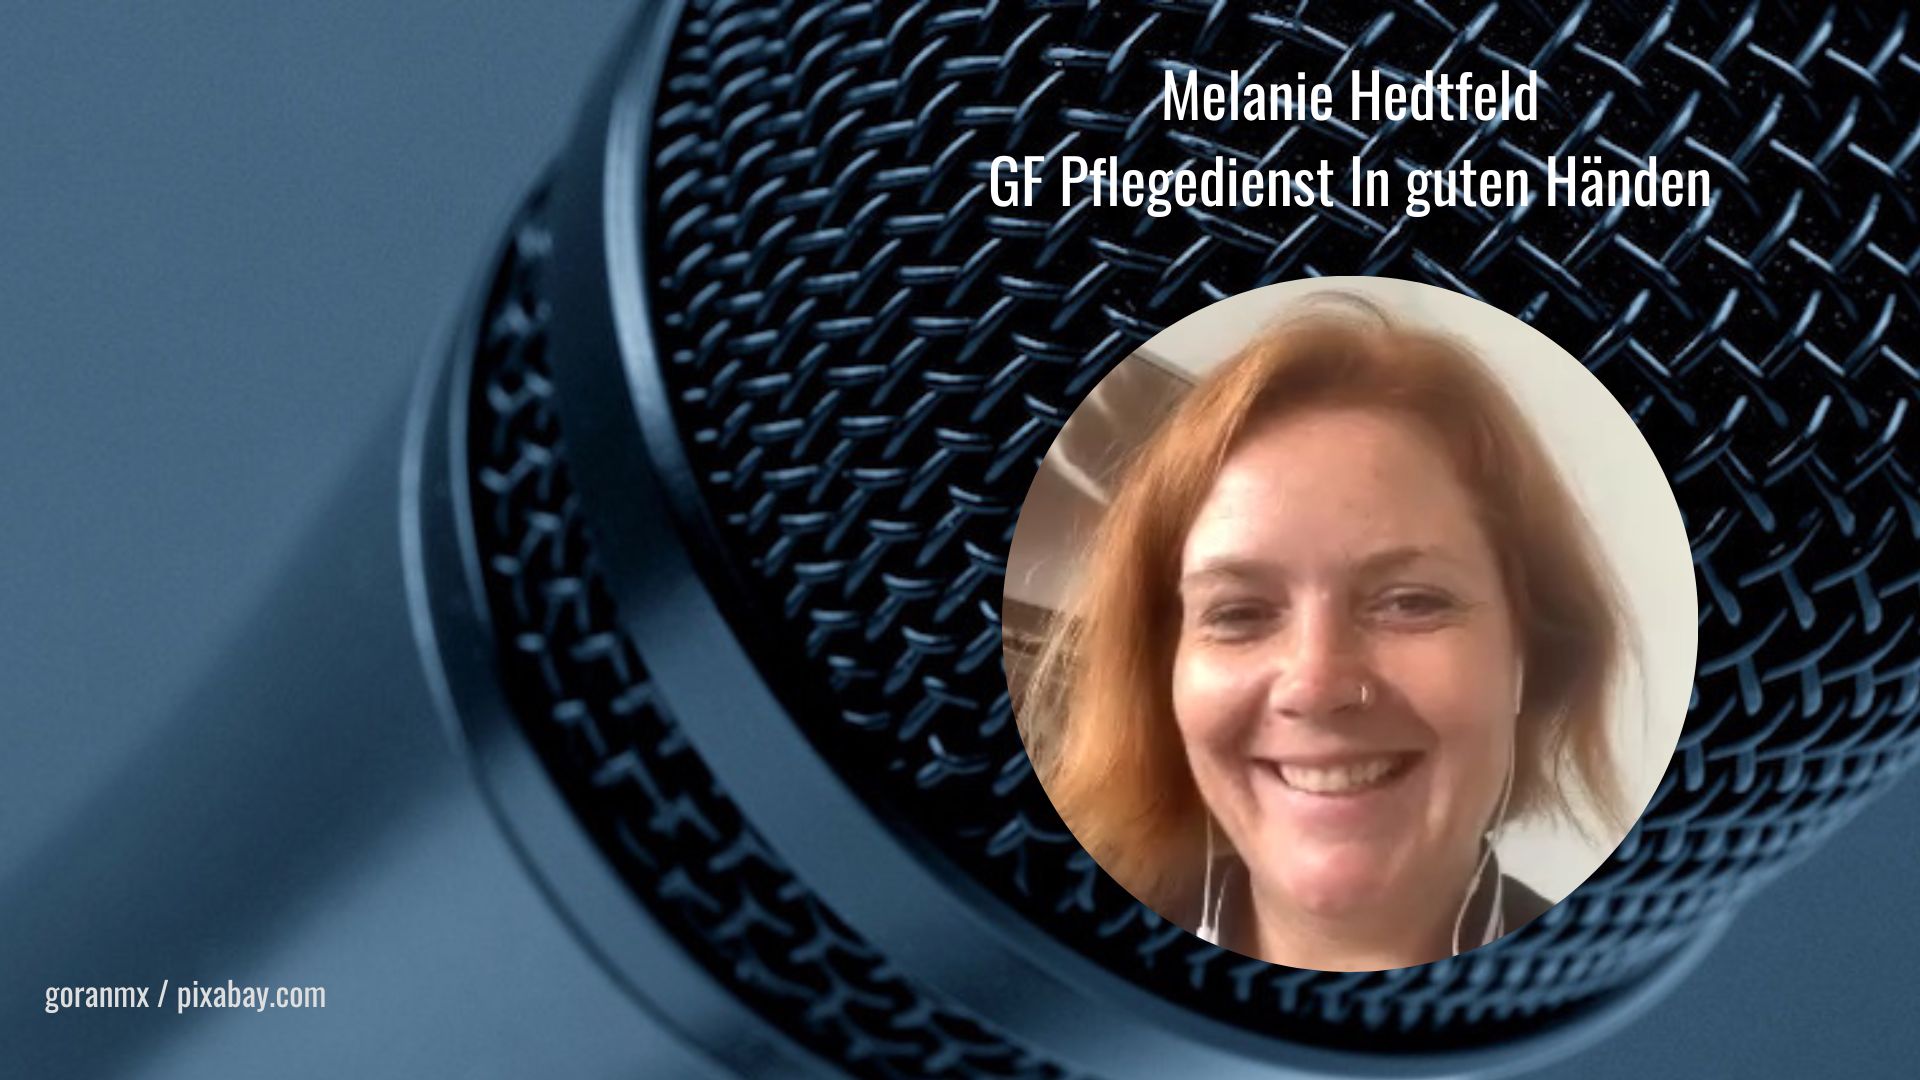 Geschäftsführung Melanie Hedtfeld | Pflegedienst In guten Händen